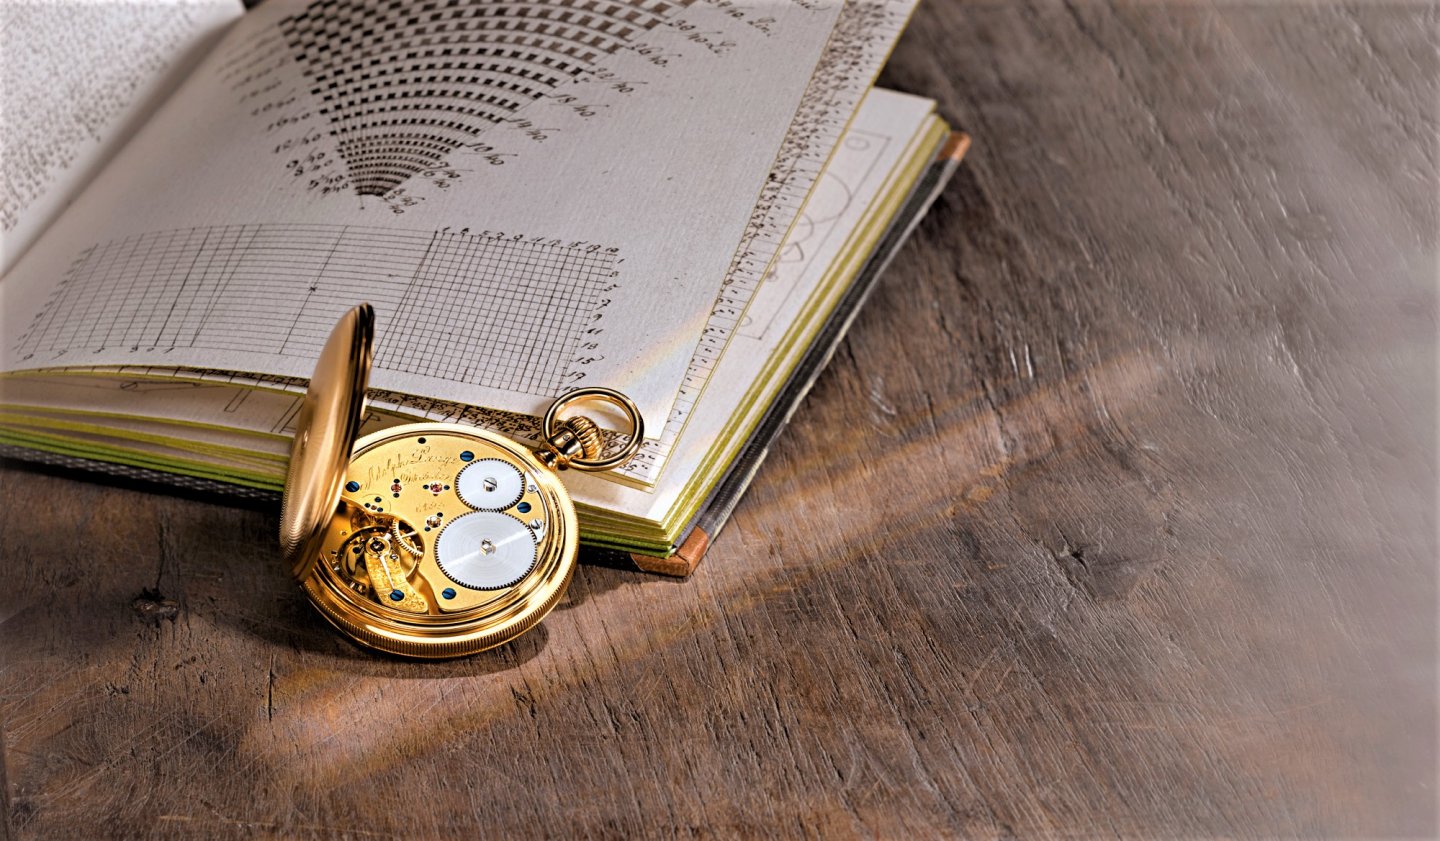 A.ランゲ＆ゾーネ 175 年アーカイブ巡回展 のご案内～ドイツ・ザクセン時計 のルーツを 物語る 懐中時計たち